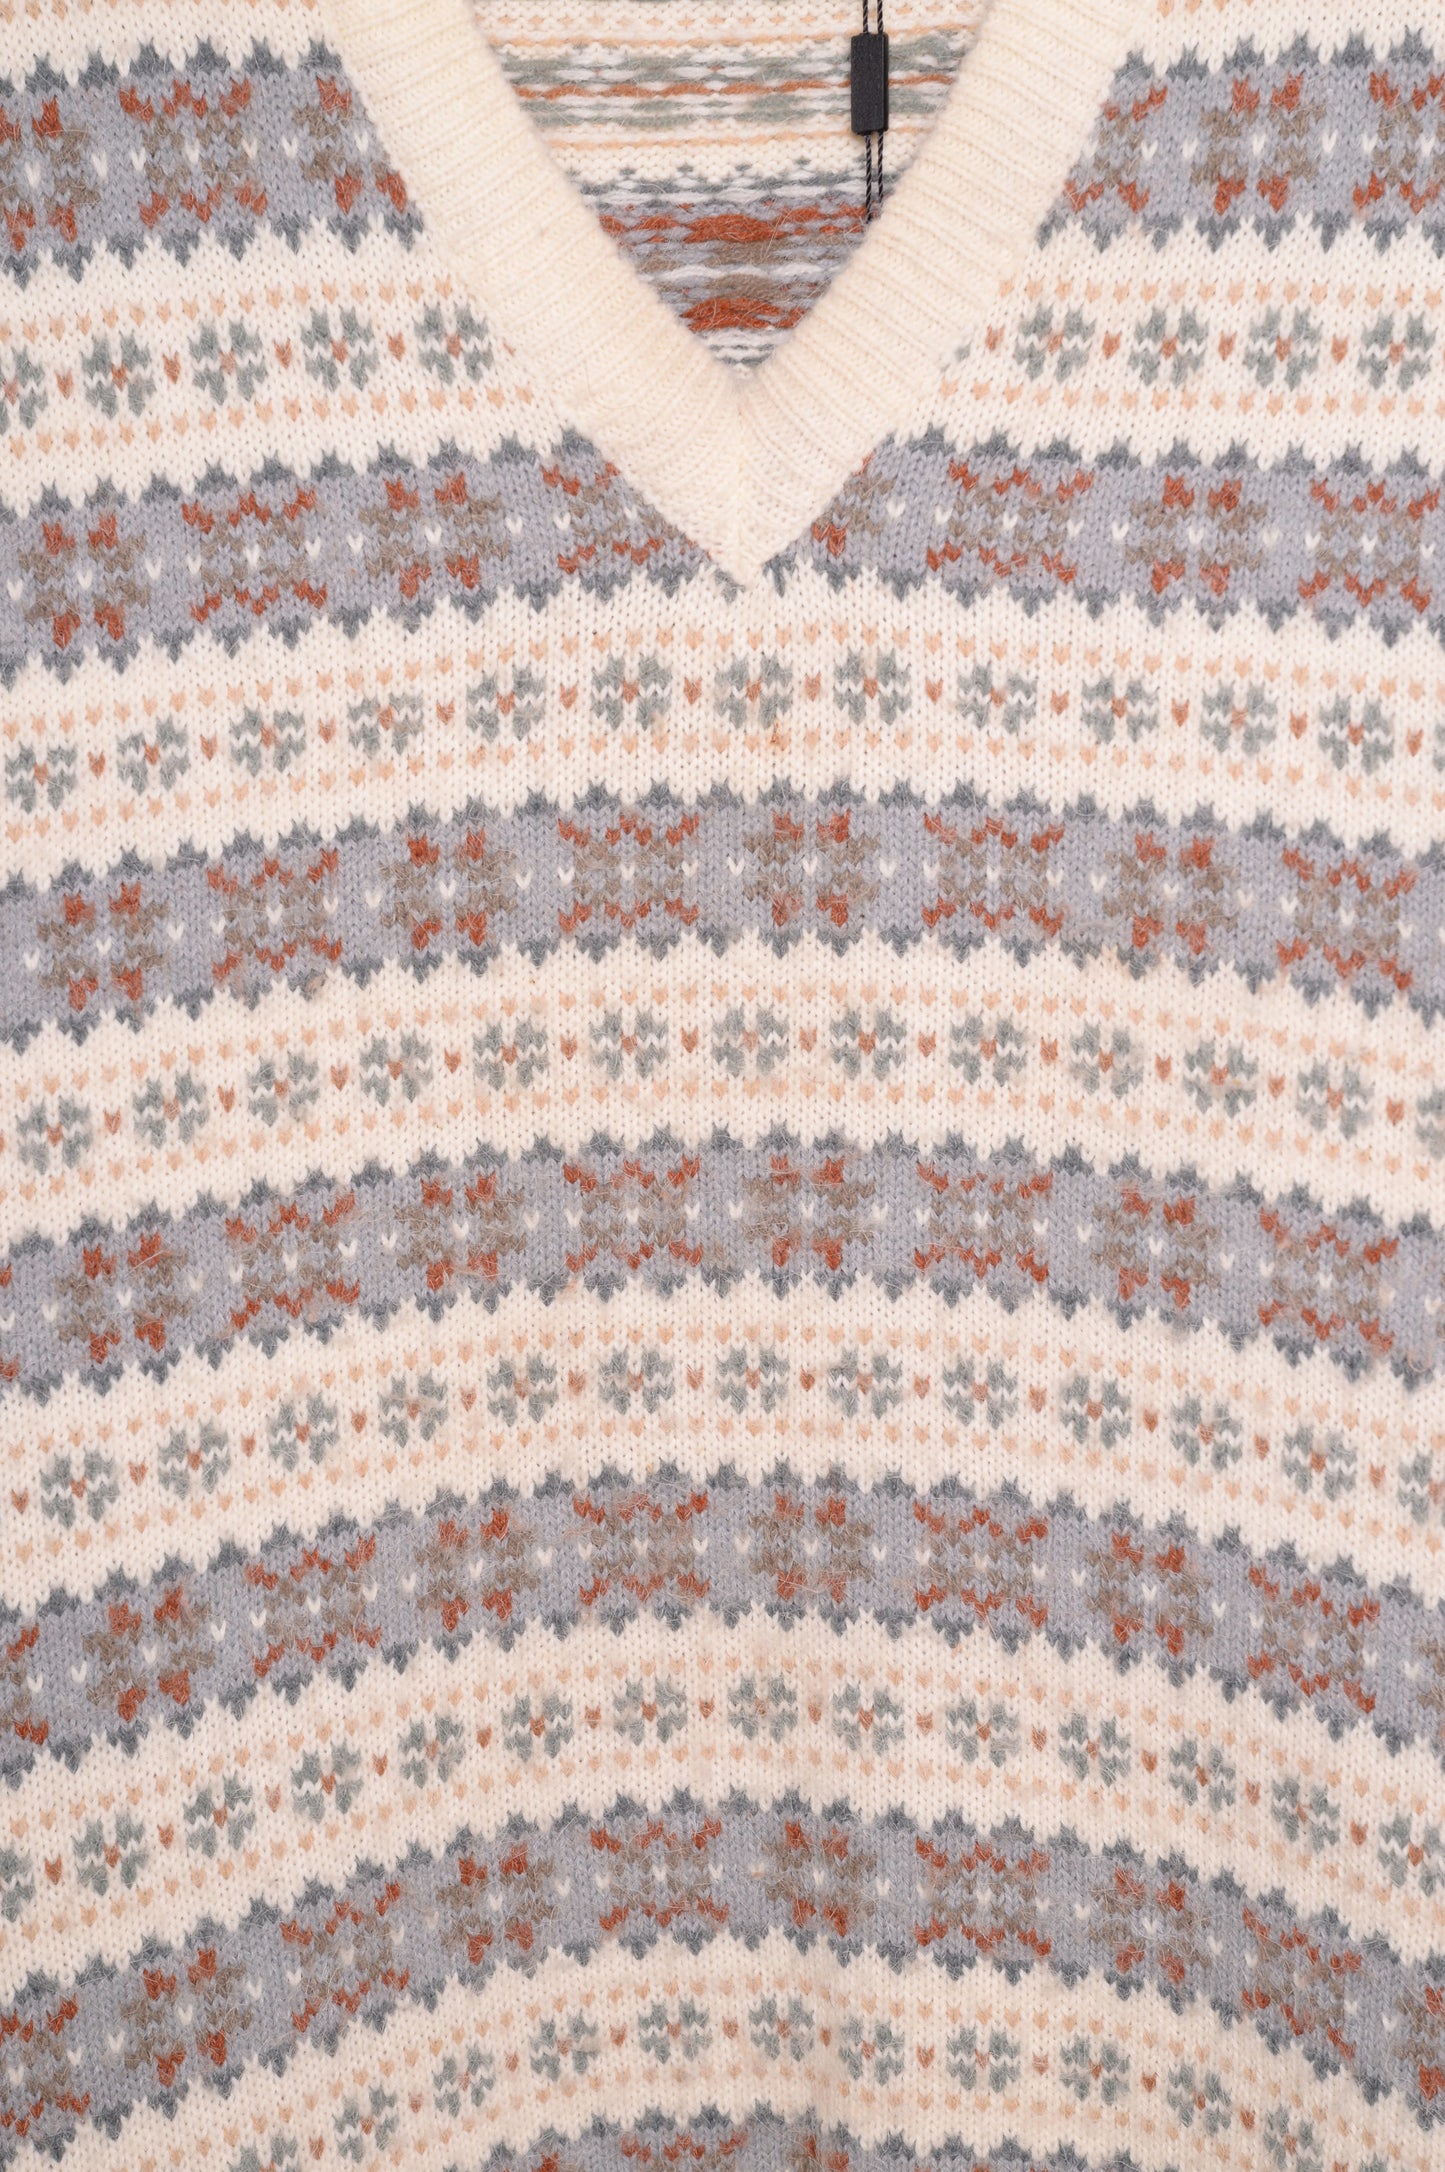 1990s Soft Alpine Sweater